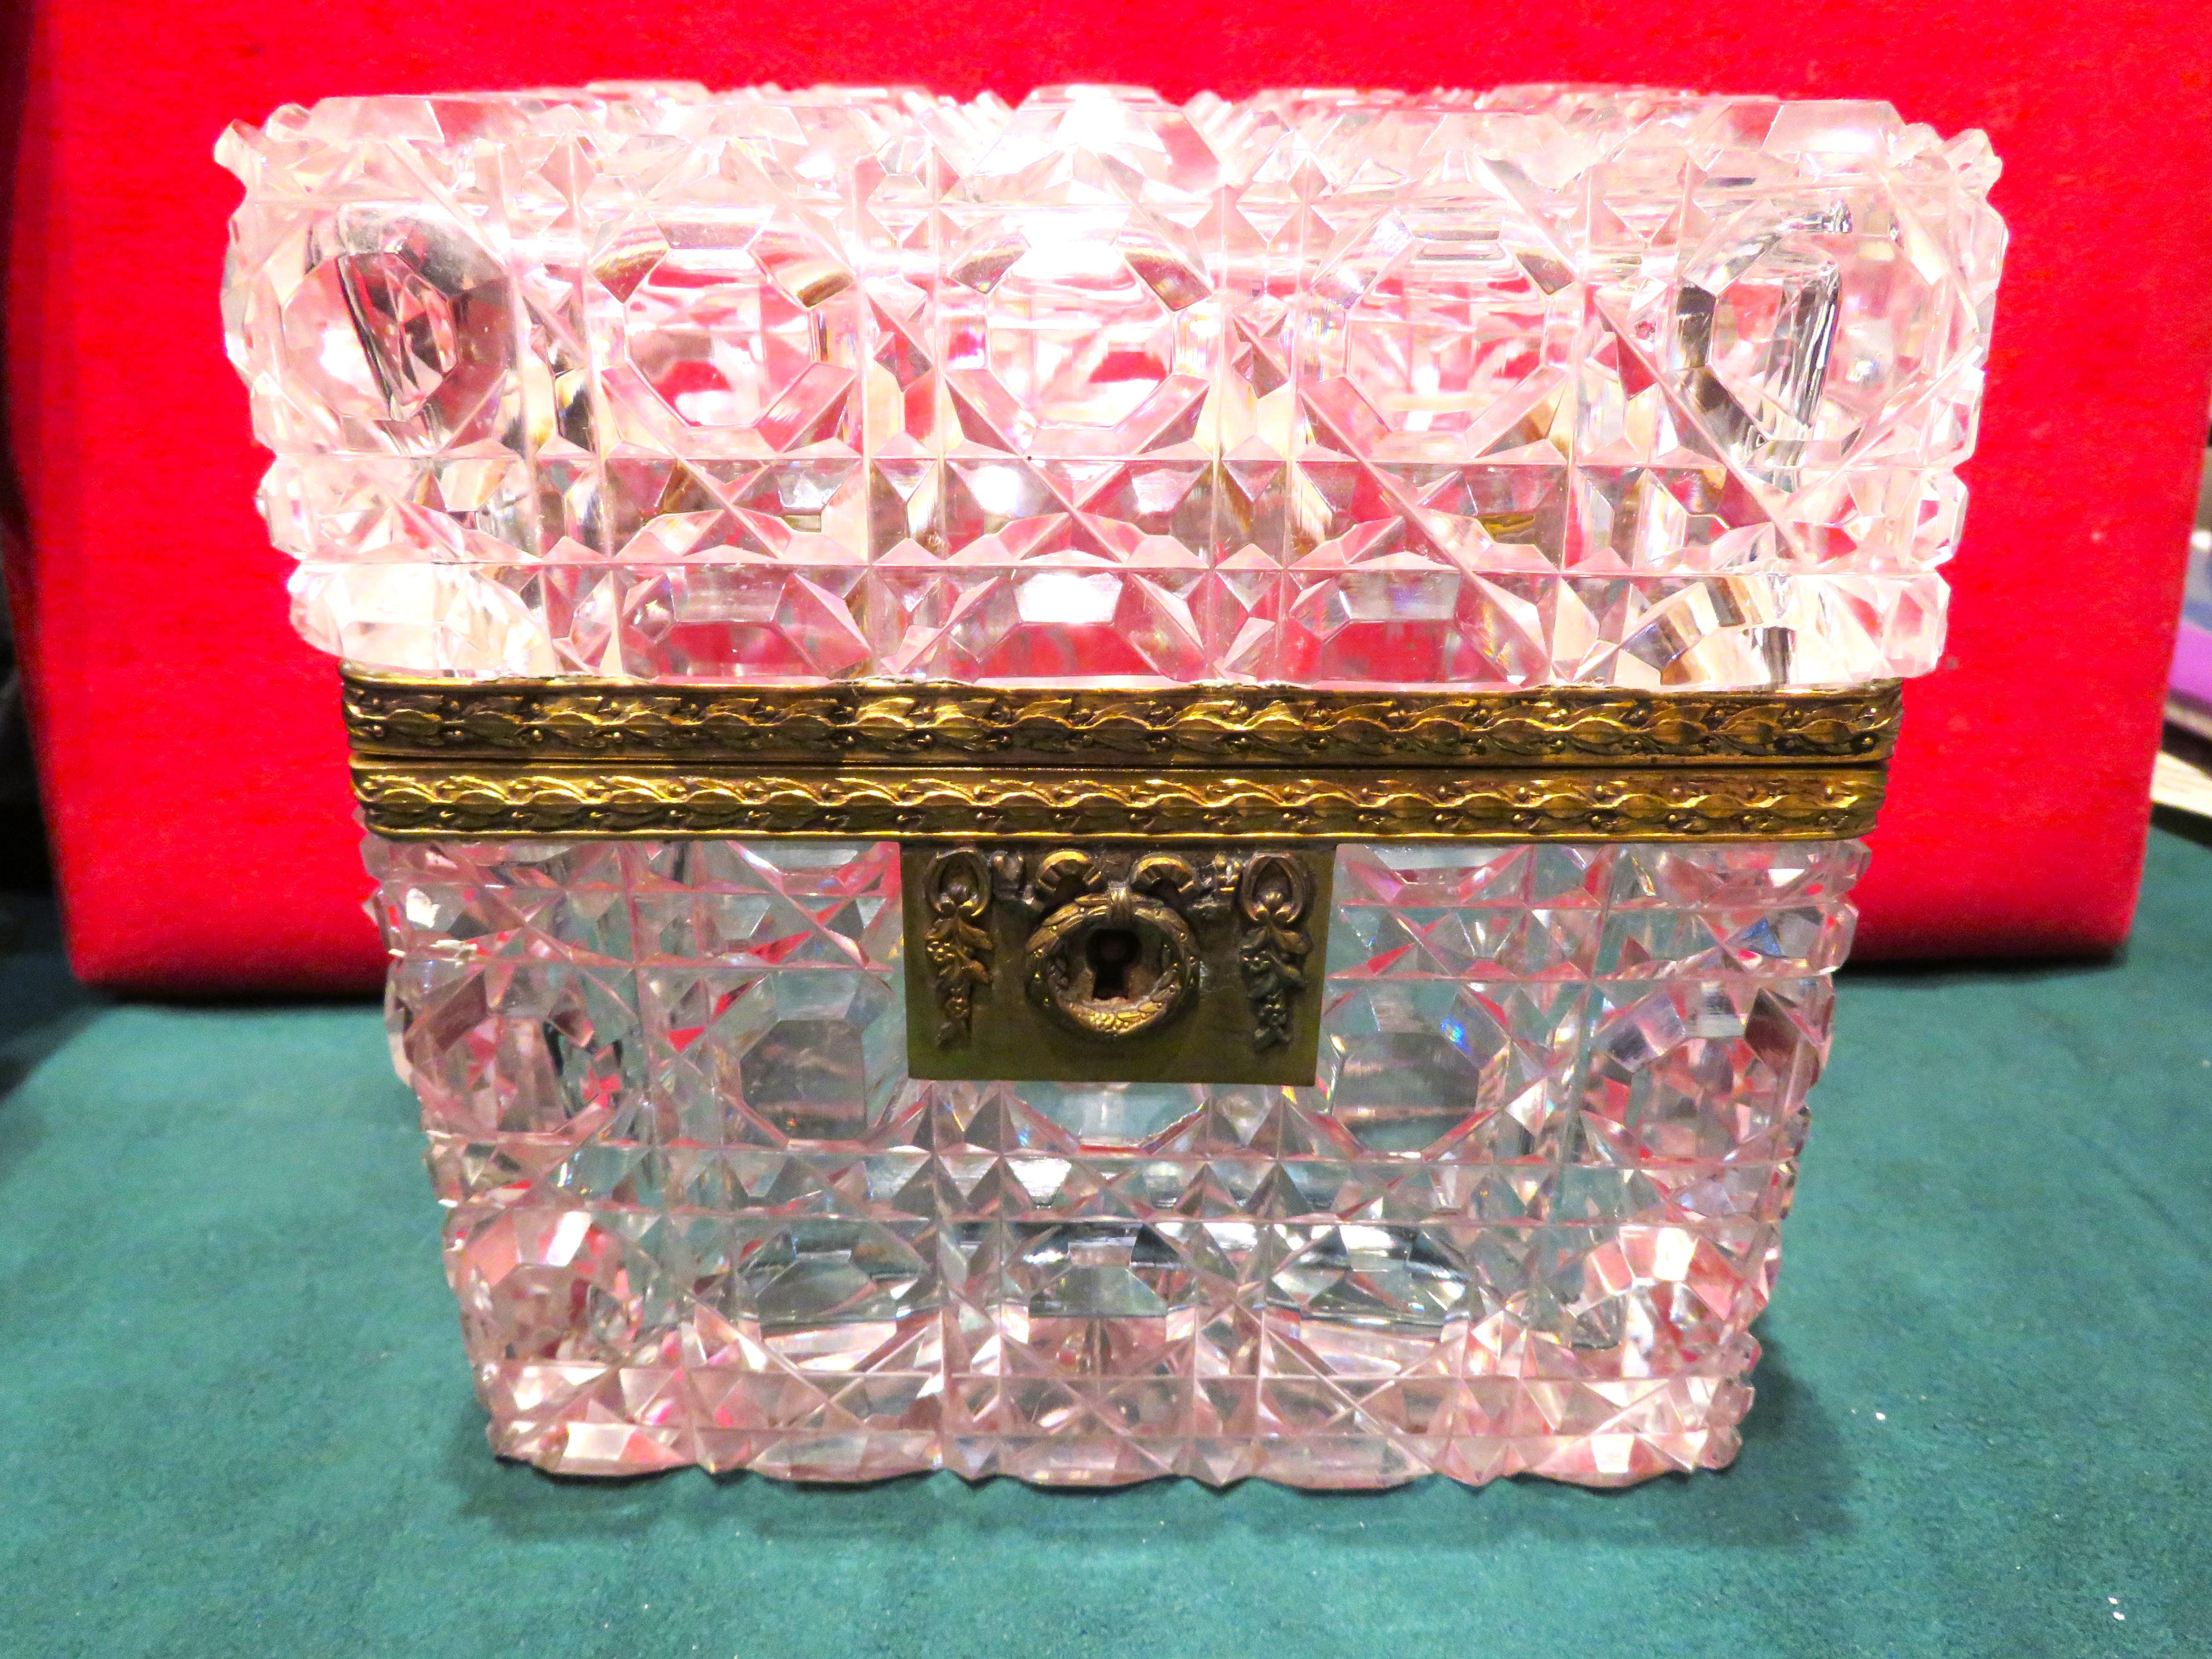 Rare et magnifique boîte à couvercle à charnière en cristal français de style Bacarrat du 19e siècle. Boîte en cristal taillé montée sur bronze doré. Le couvercle rectangulaire à charnière et les côtés sont centrés sur des bandes profondément